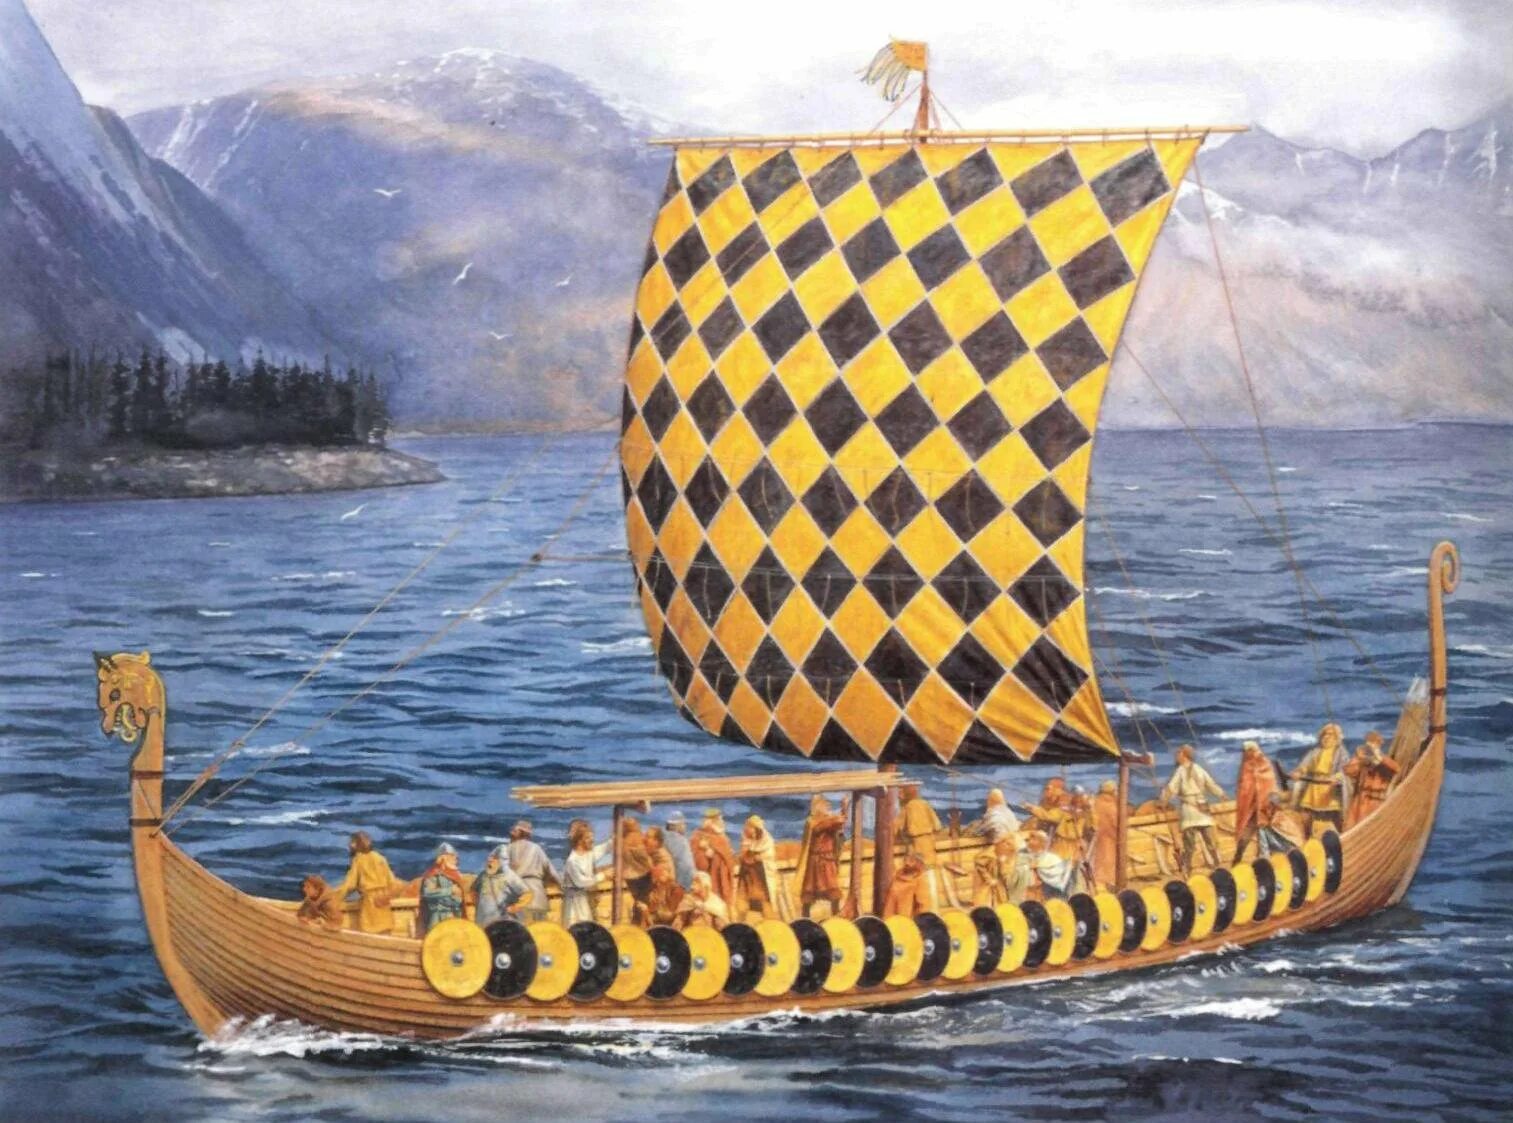 Ладья песни. Карви корабль викингов. Ладья викингов дракар. Гокштадский корабль (дракар). Корабль викингов Драккар 10 век.